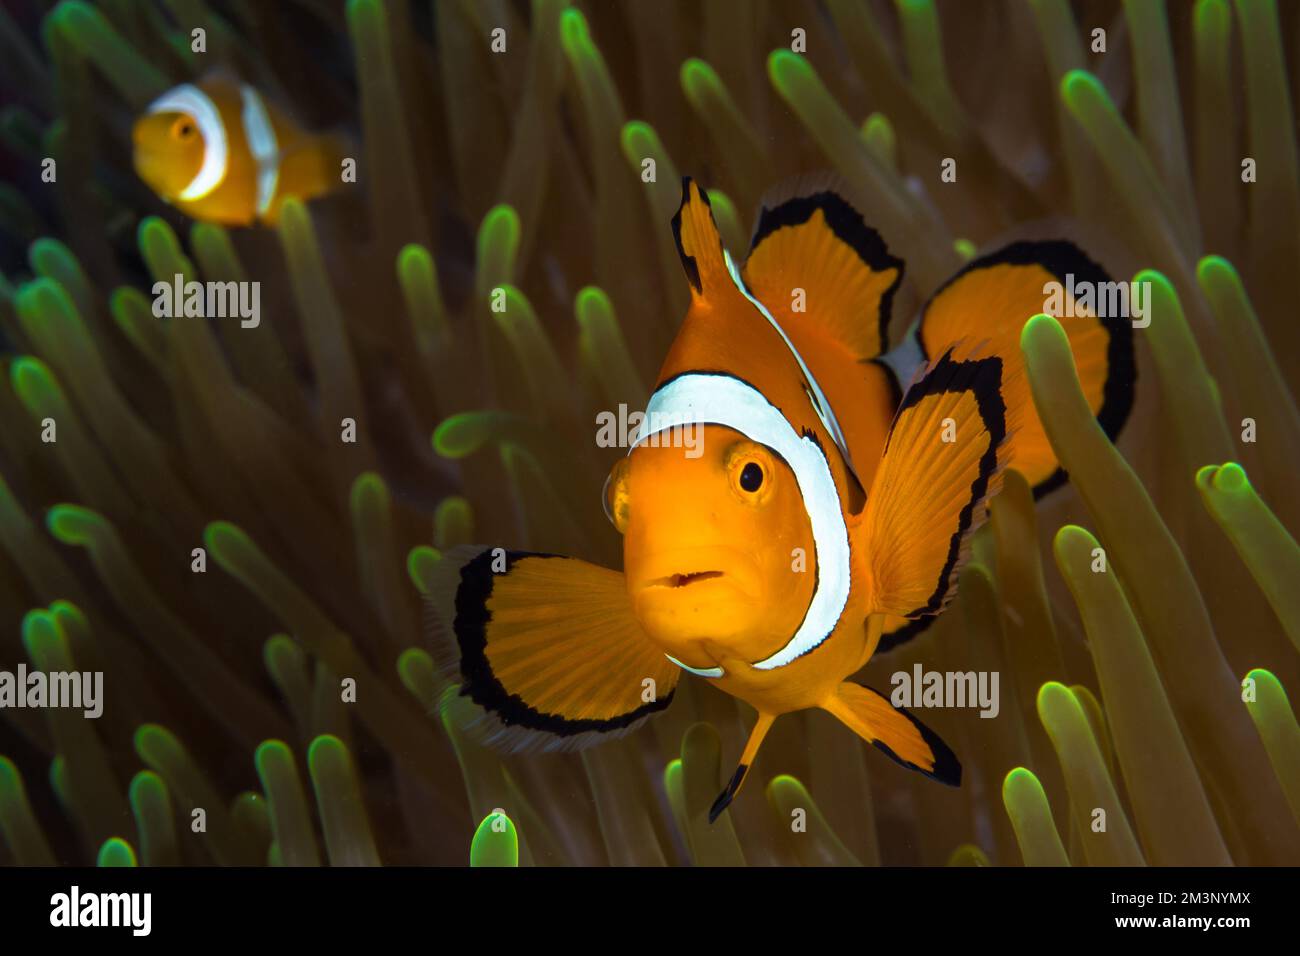 Bellissimo pesce pagliaccio arancione sopra l'anemone Foto Stock